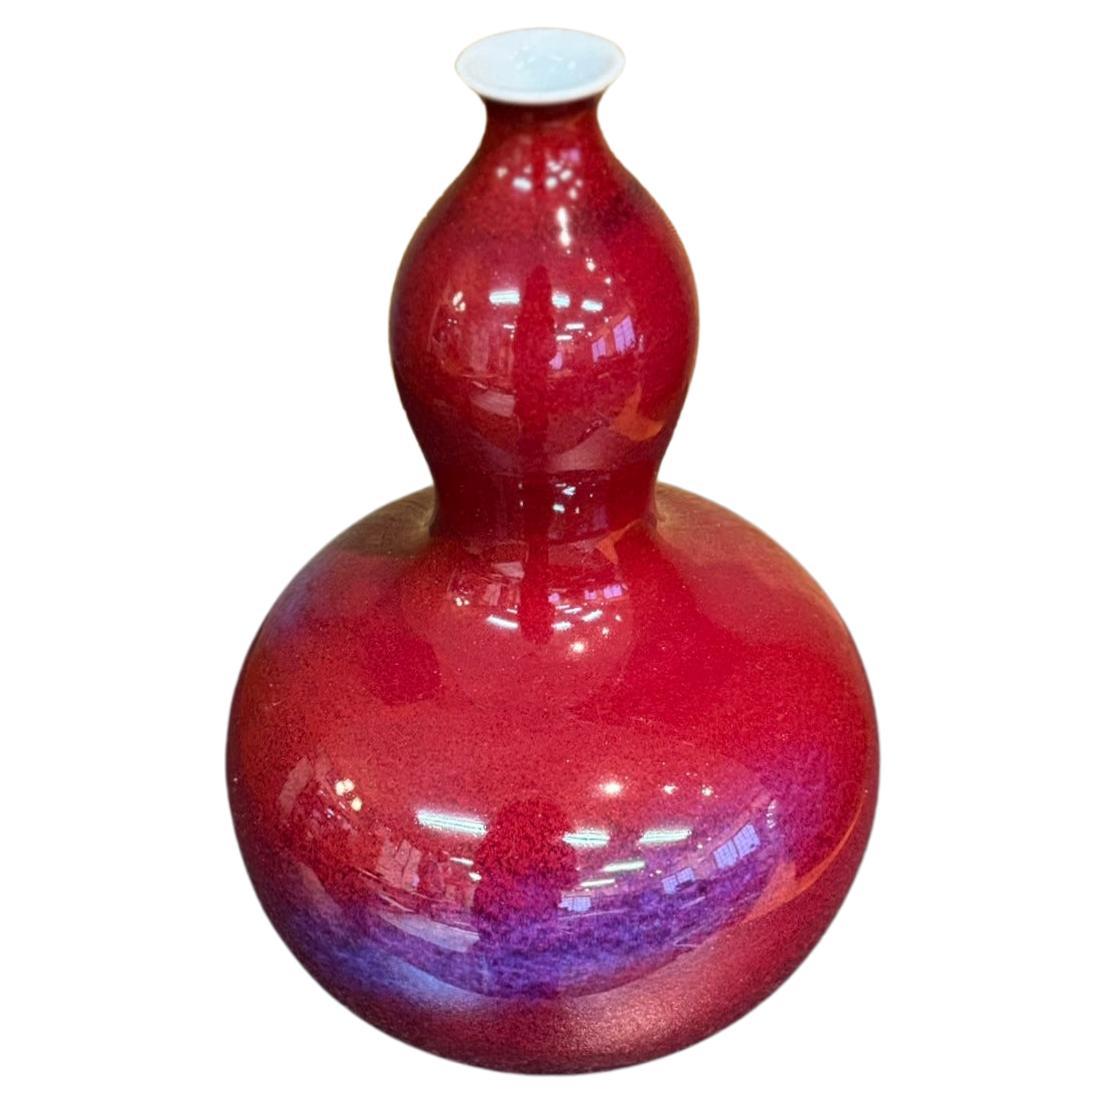 Außergewöhnliche Vase aus zeitgenössischem japanischem Dekorationsporzellan, handglasiert in lebhaftem Rot und Blau/Violett auf einem atemberaubenden kürbisförmigen Korpus, aus der außergewöhnlichen Serie Galaxy des berühmten, preisgekrönten